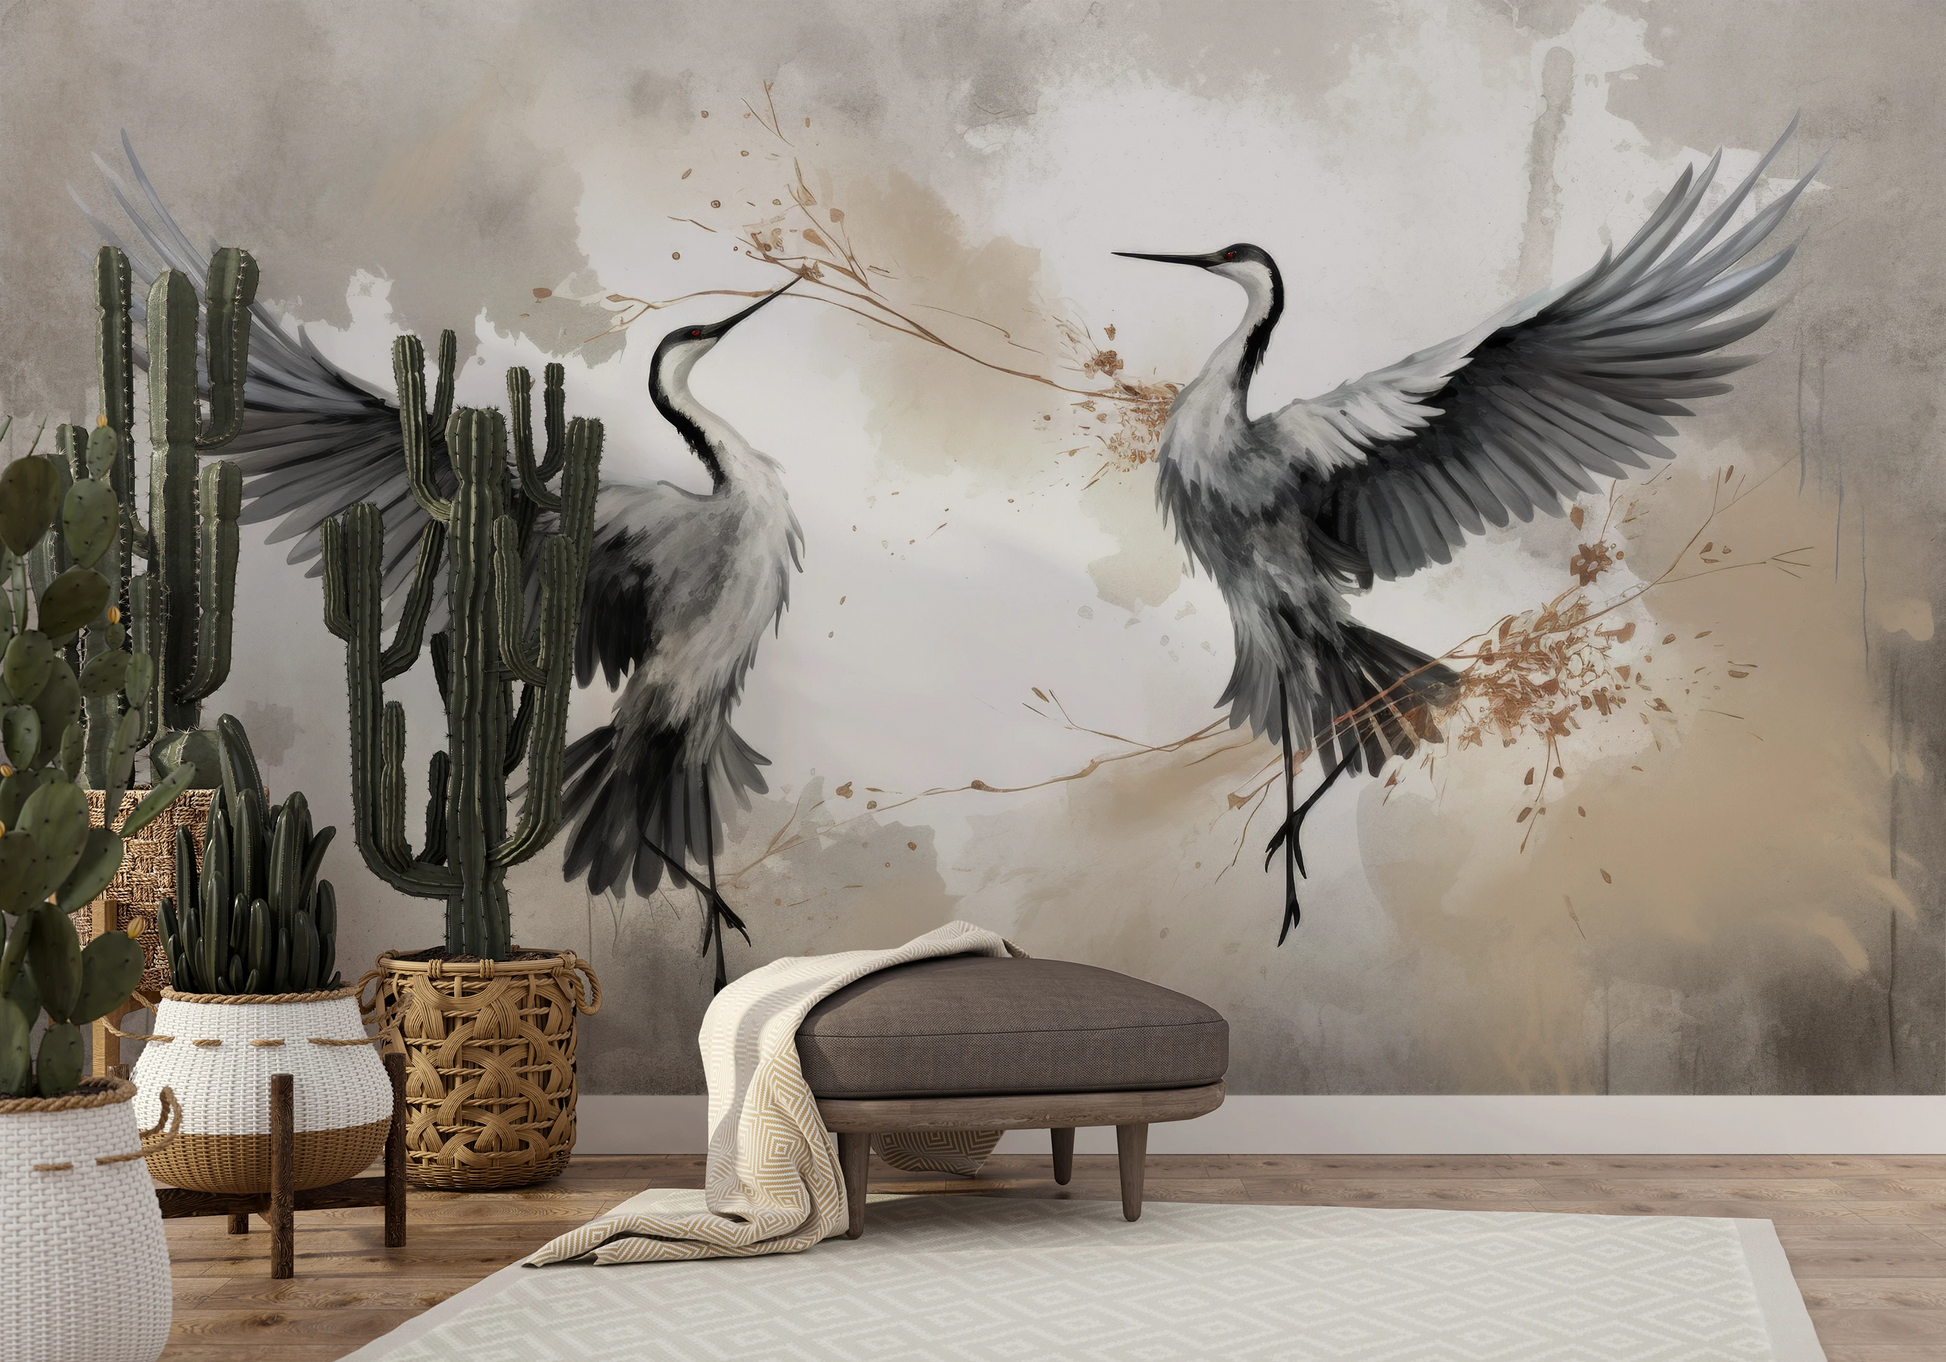 Fototapeta malowana o nazwie Wings of Freedom pokazana w aranżacji wnętrza.